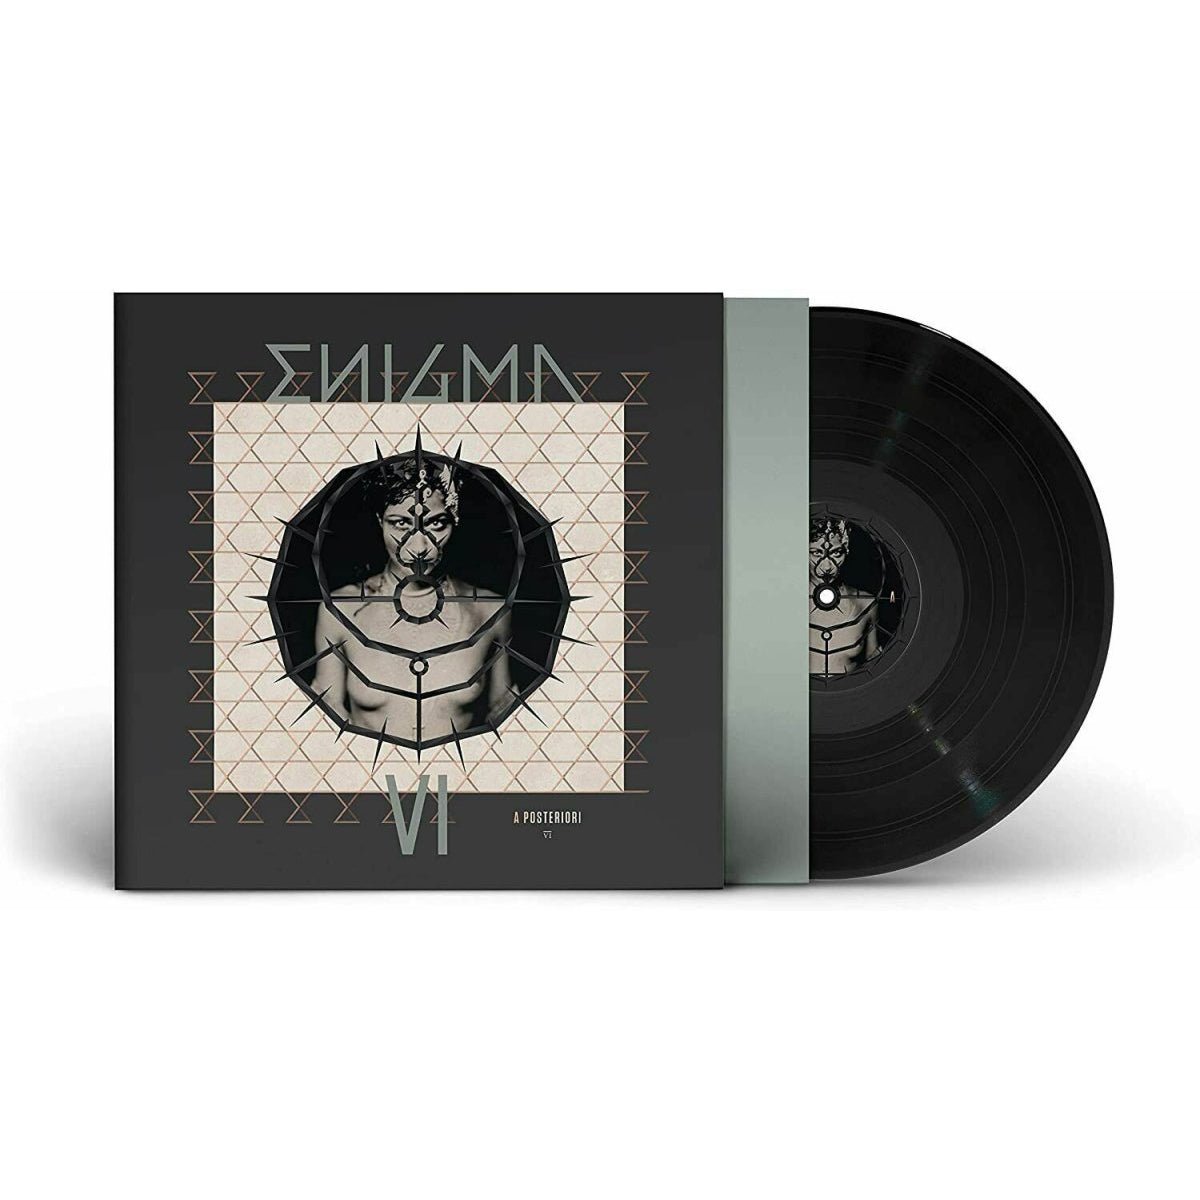 Enigma - A Posteriori Vinyl